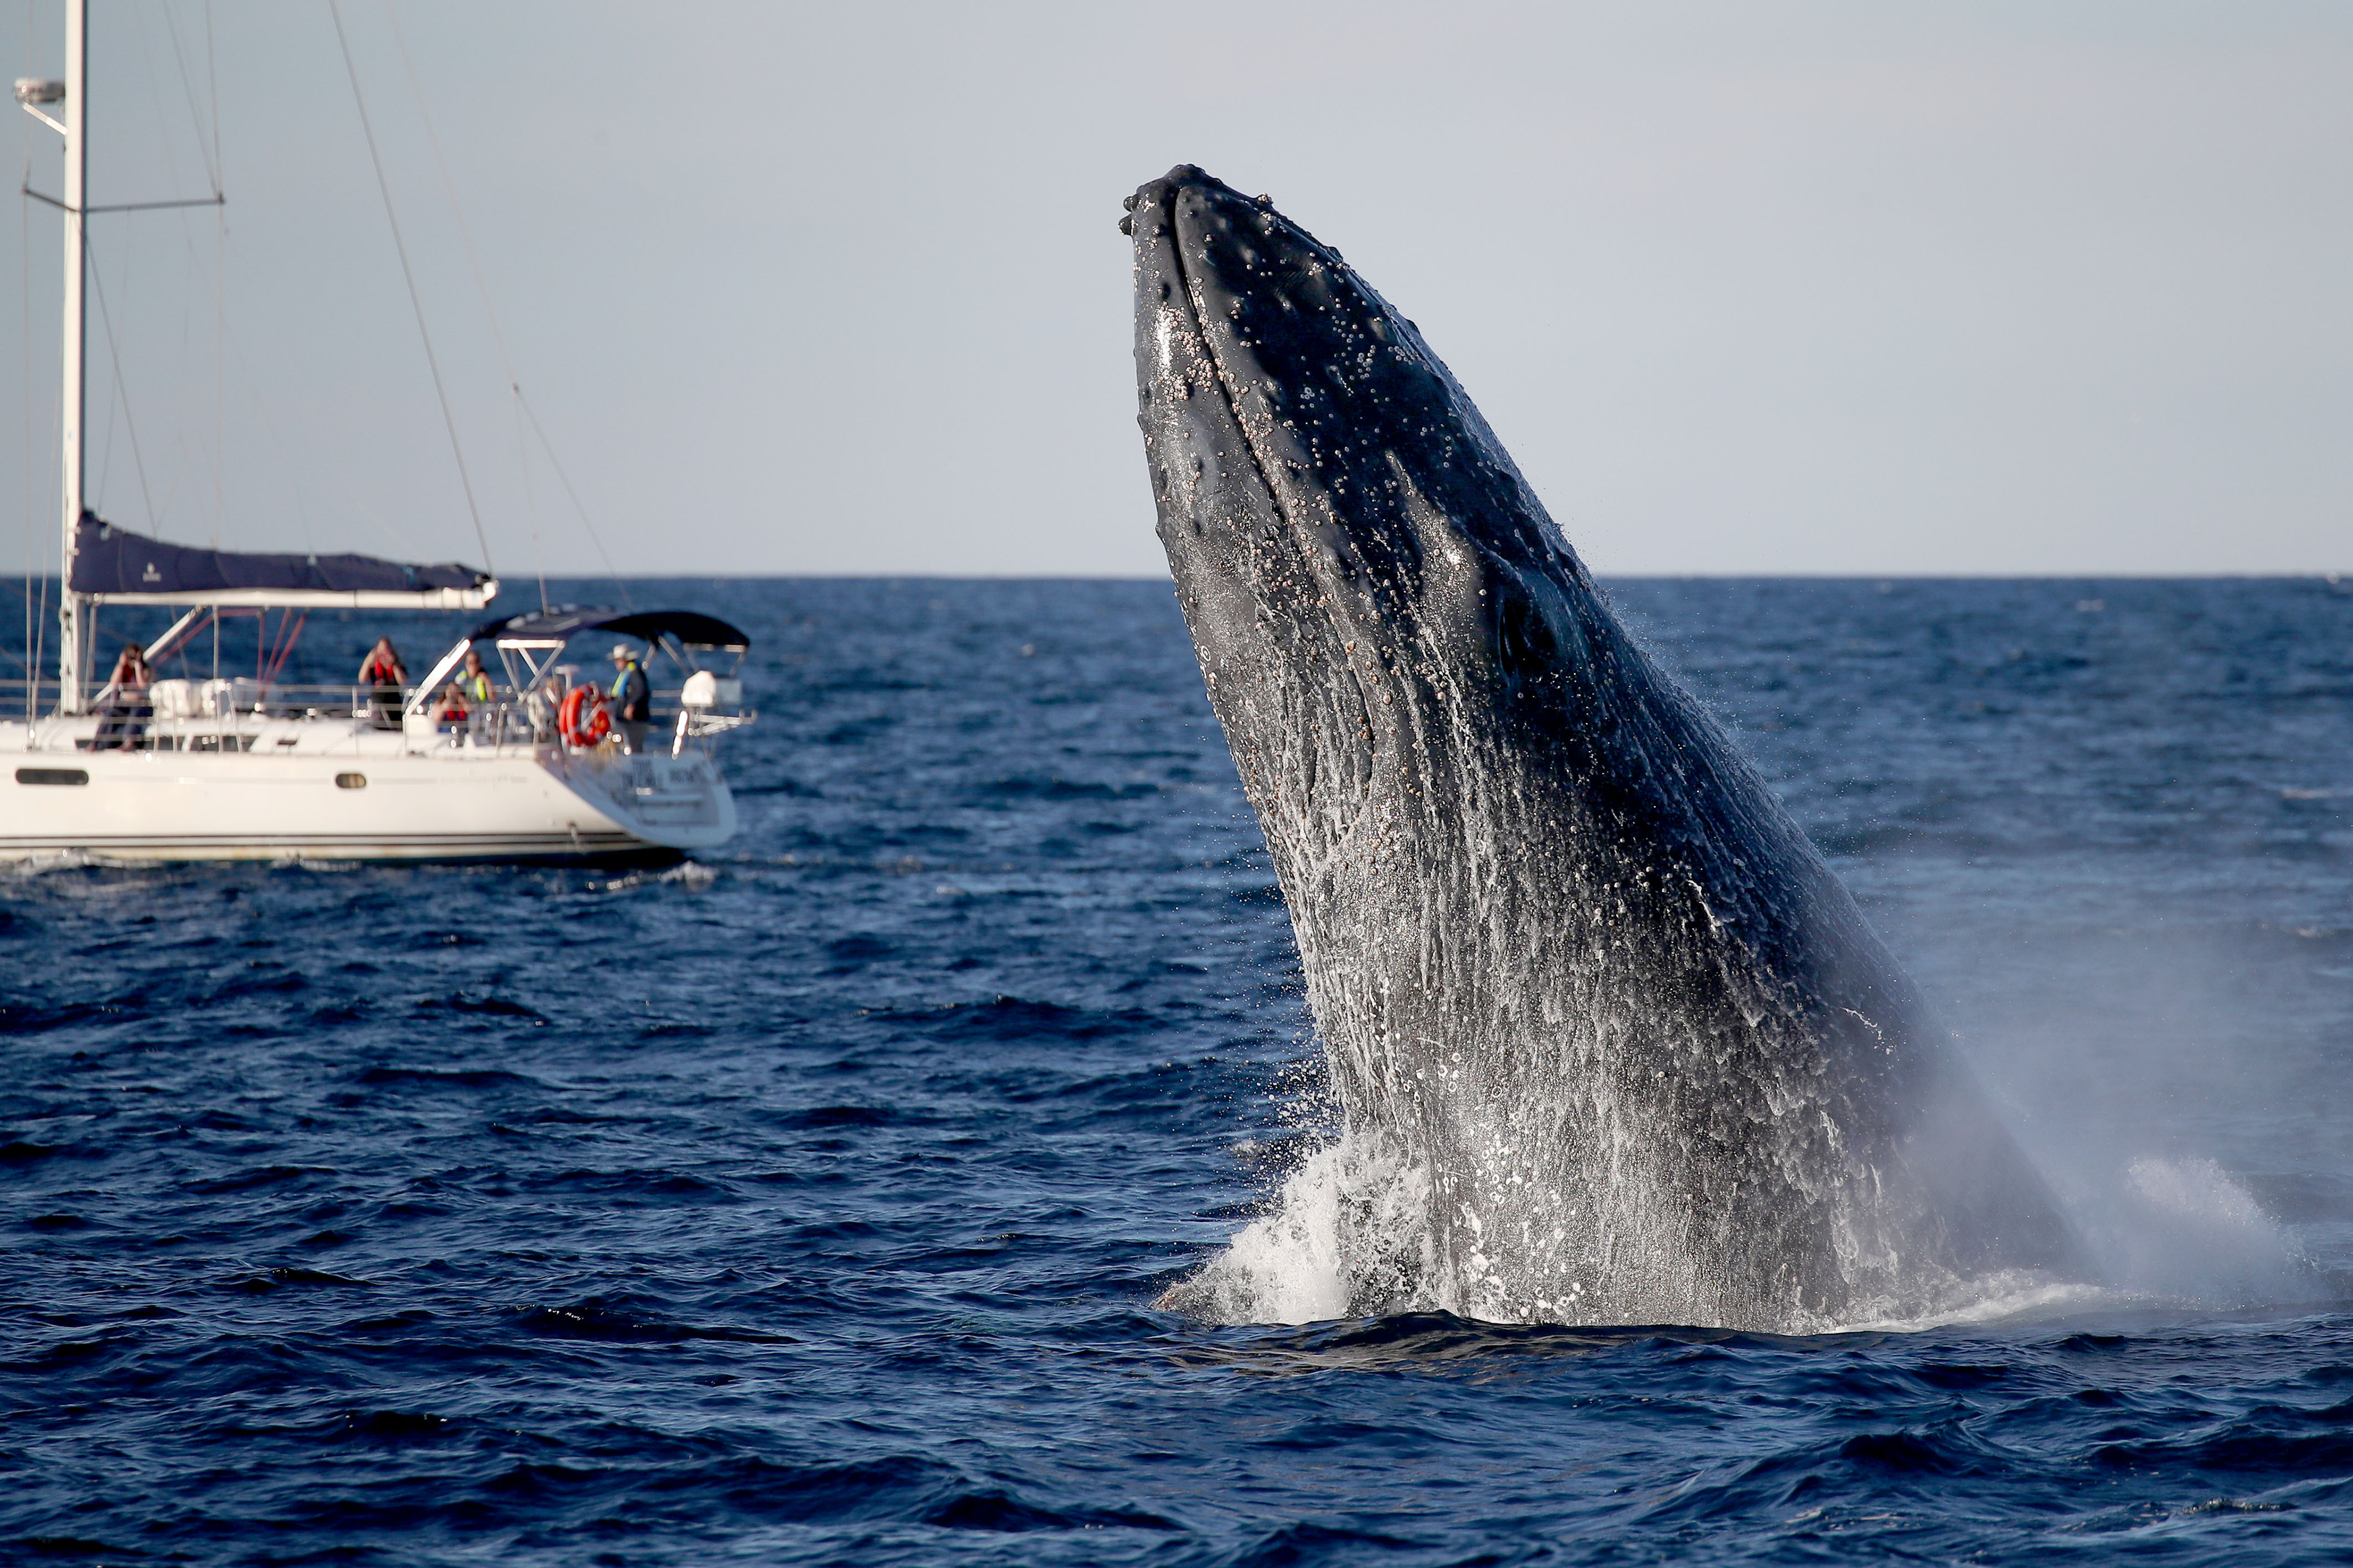 澳洲巨大座头鲸罕见跃出水面 惊艳了一船游客!